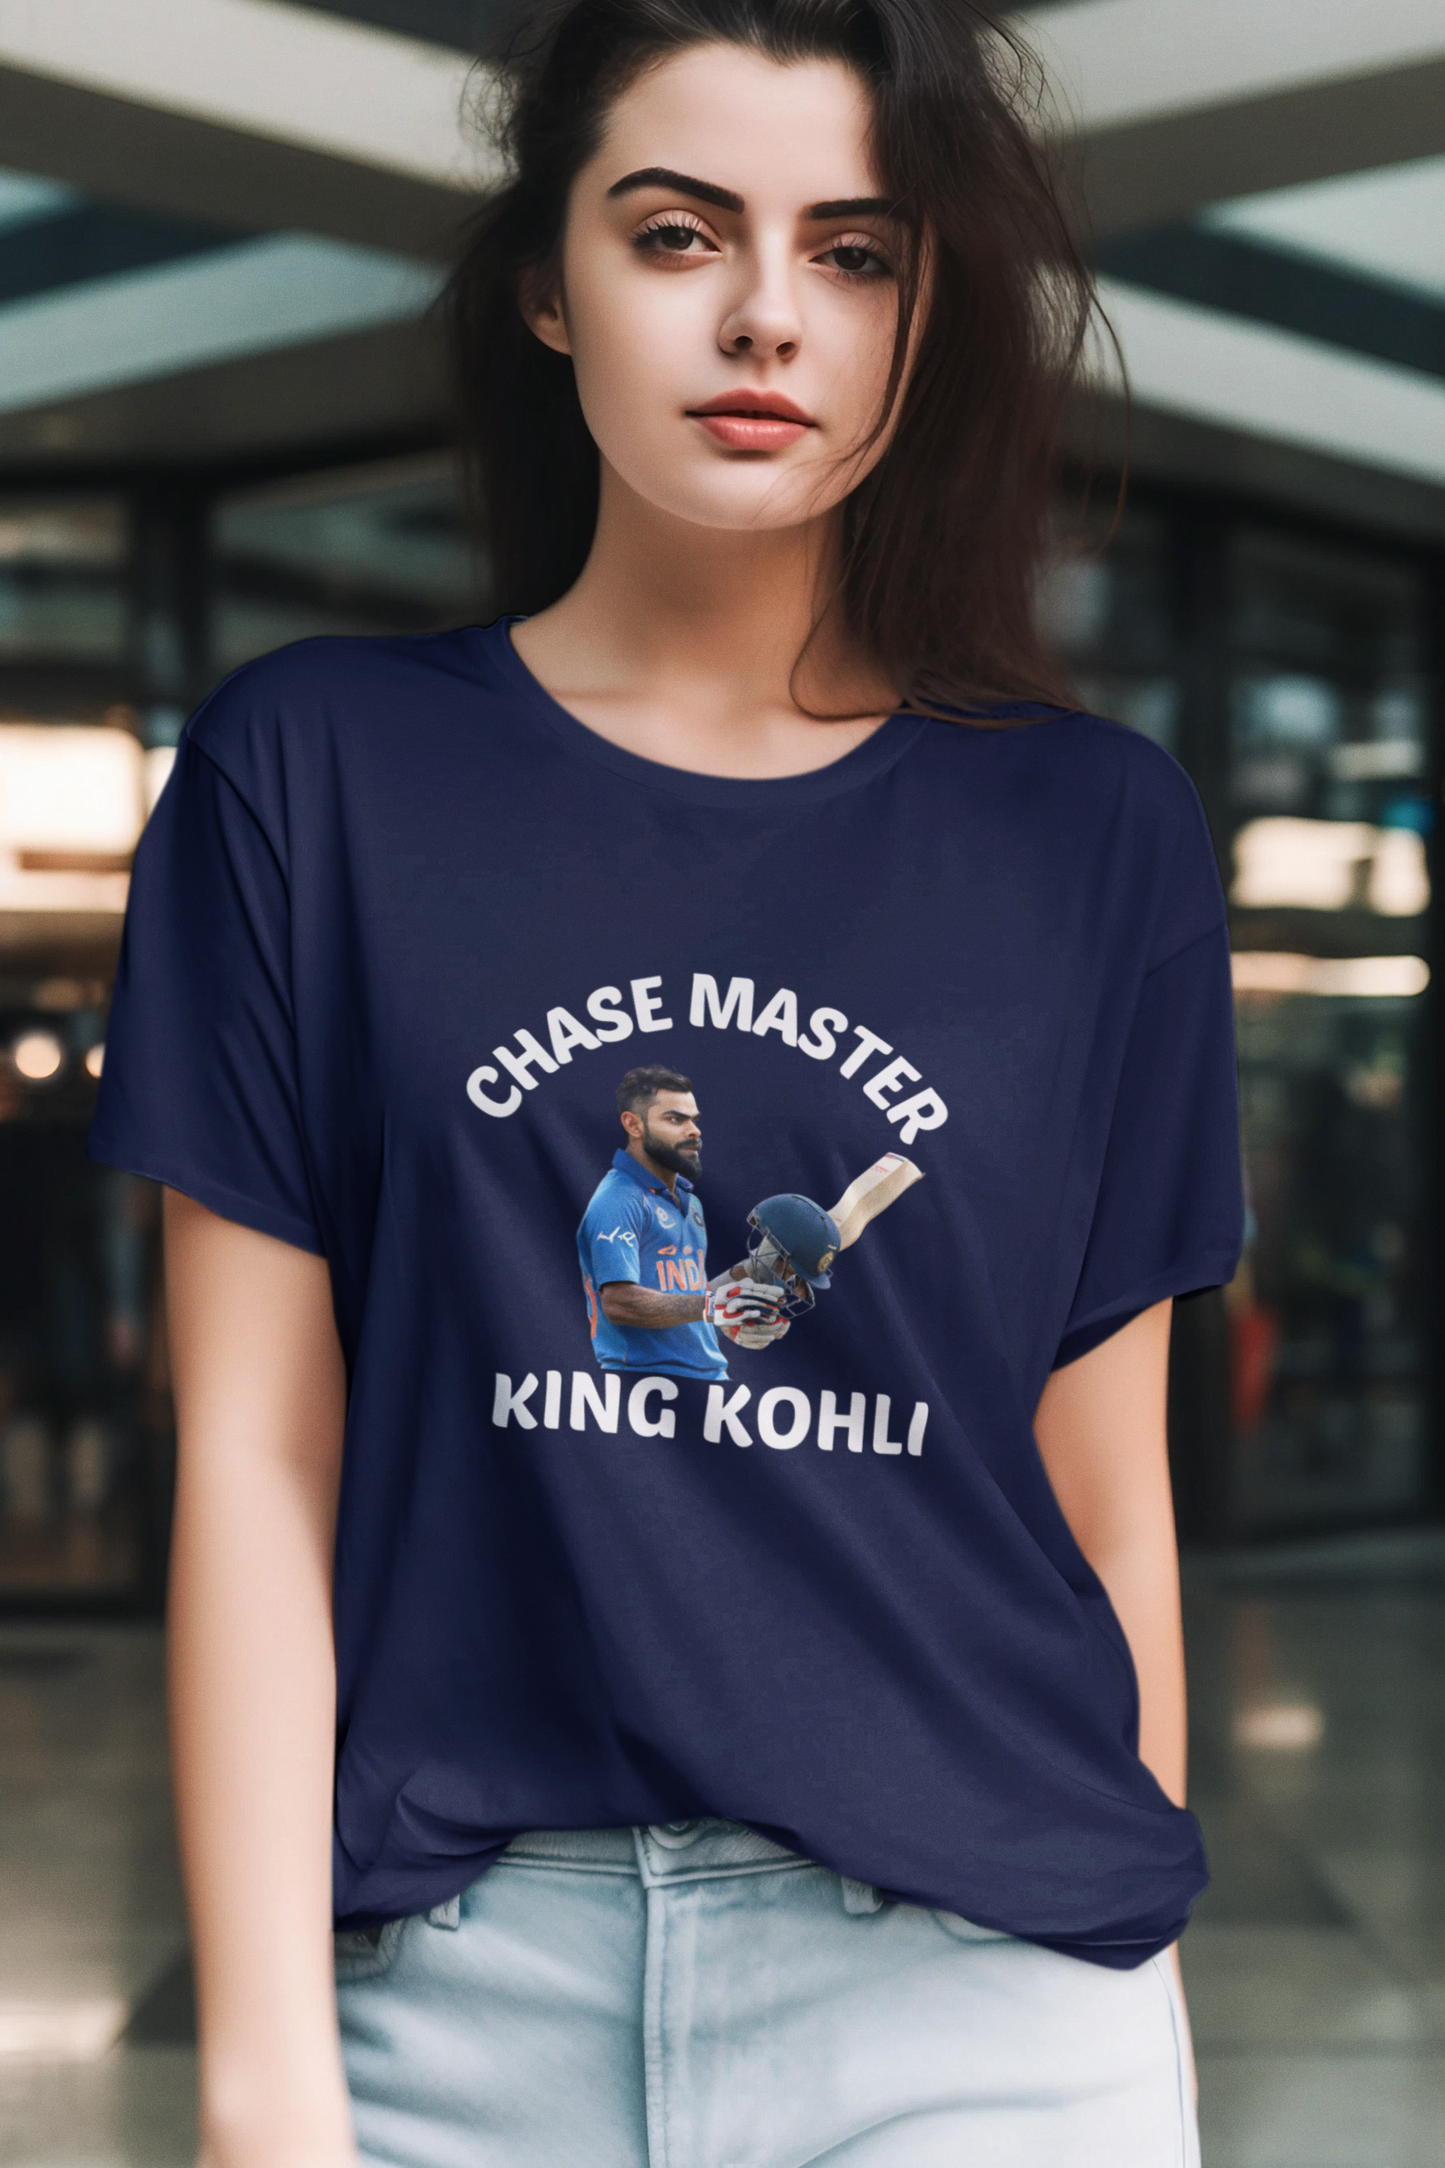 Virat Kohli Chase Master - T-Shirt for Women’s